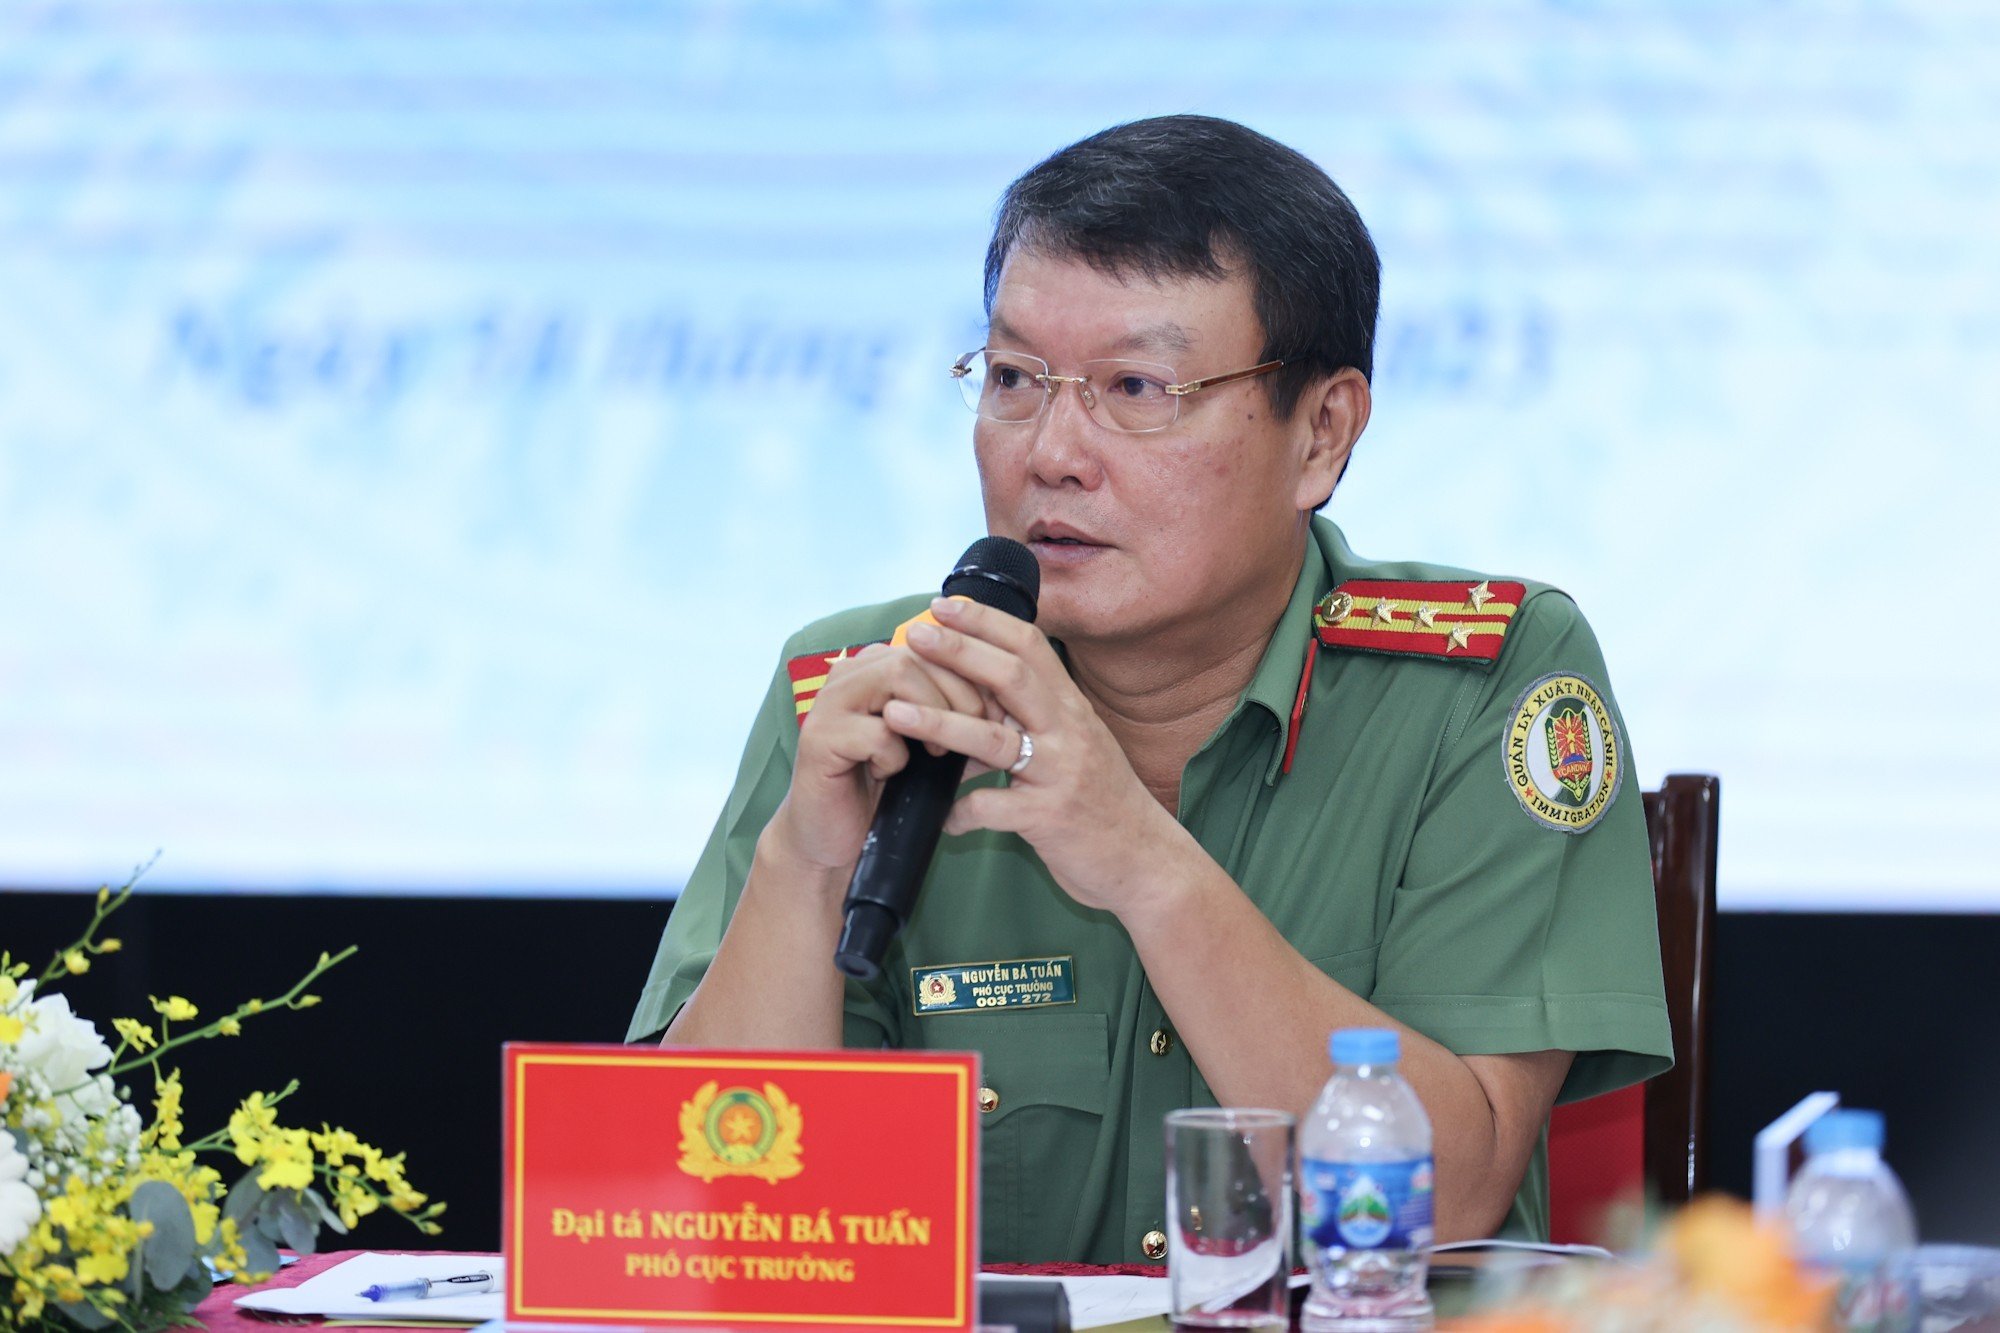 Đại tá Nguyễn Bá Tuấn - Phó Cục trưởng Cục Quản lý Xuất nhập cảnh. Ảnh: Trần Vương 